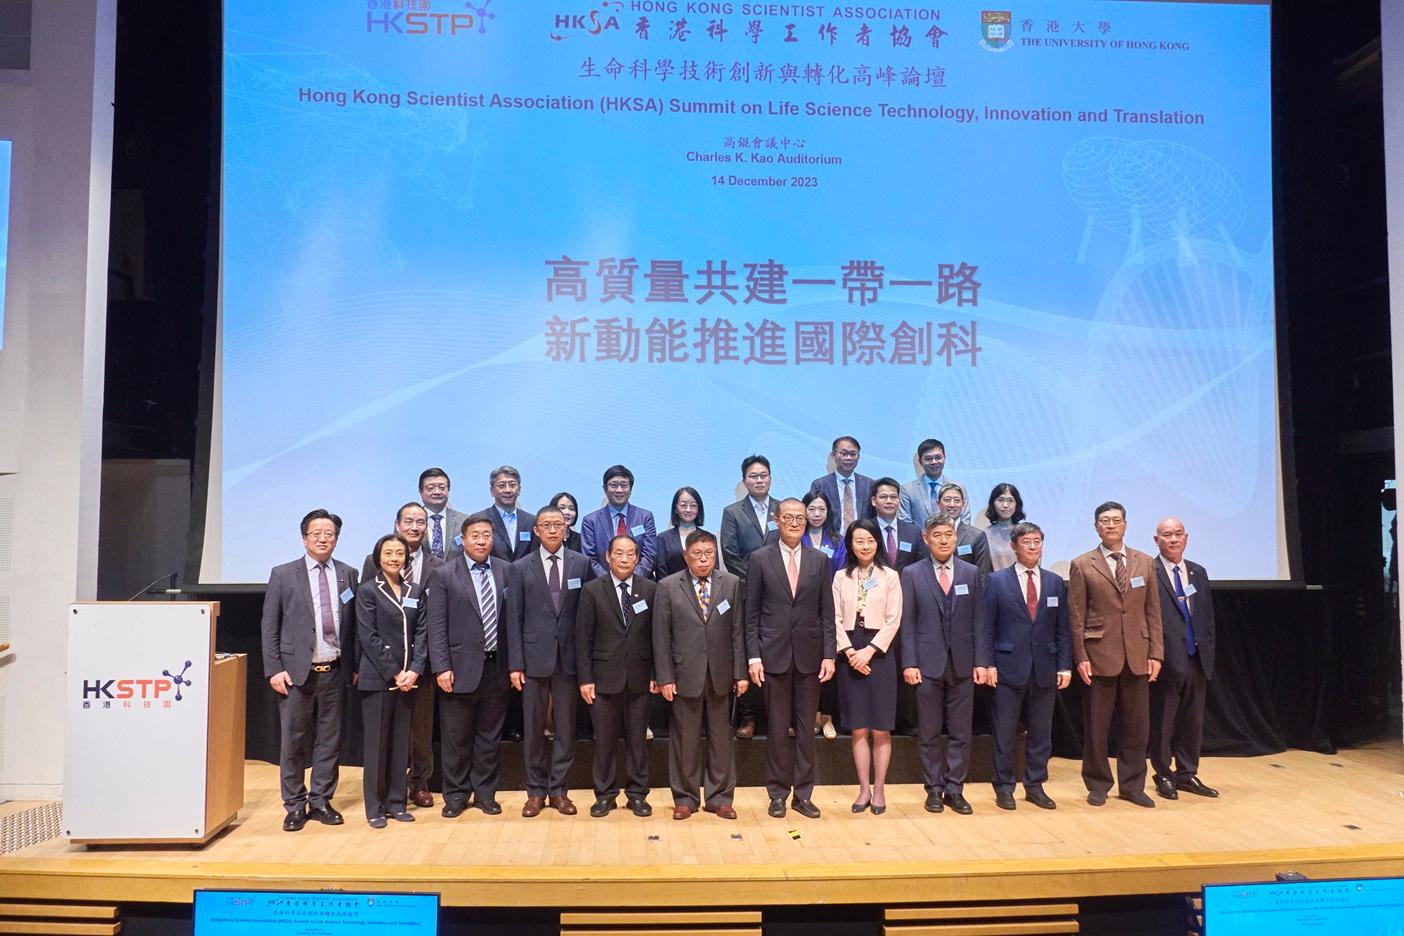 「生命科學技術創新與轉化高峰論壇」近日於香港科學園圓滿舉行。